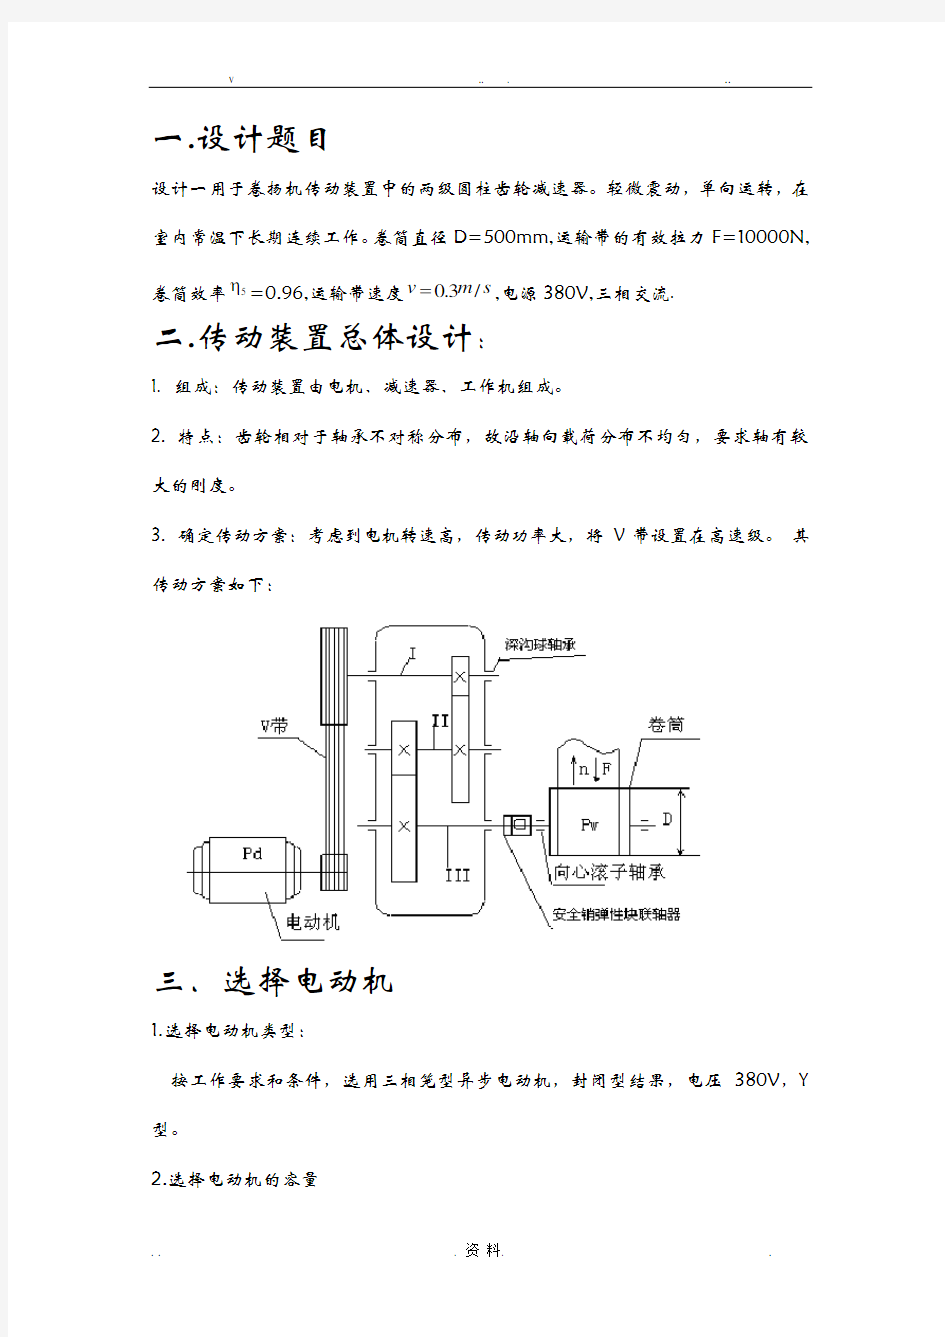 课程设计报告-二级展开式圆柱齿轮减速器(含全套图纸)